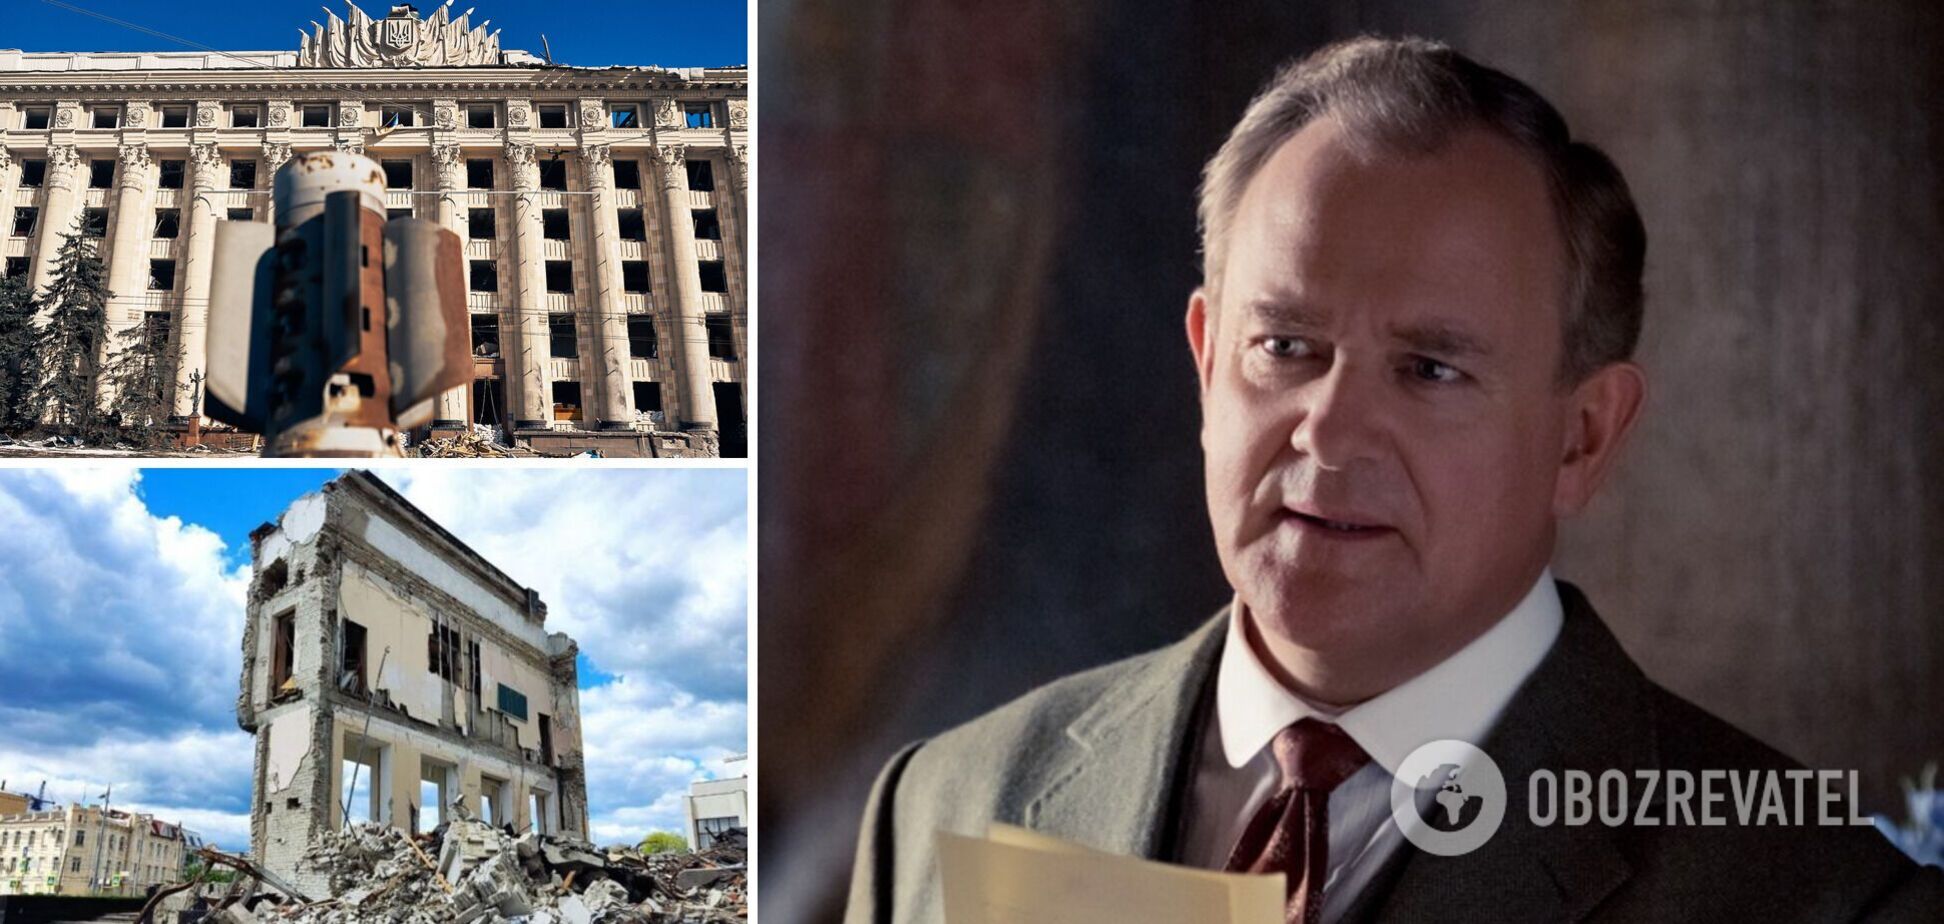 Зірка 'Аббатства Даунтон' Бонневіль озвучив ролик про зруйнований Харків: можна знищити майдани, але не свободу